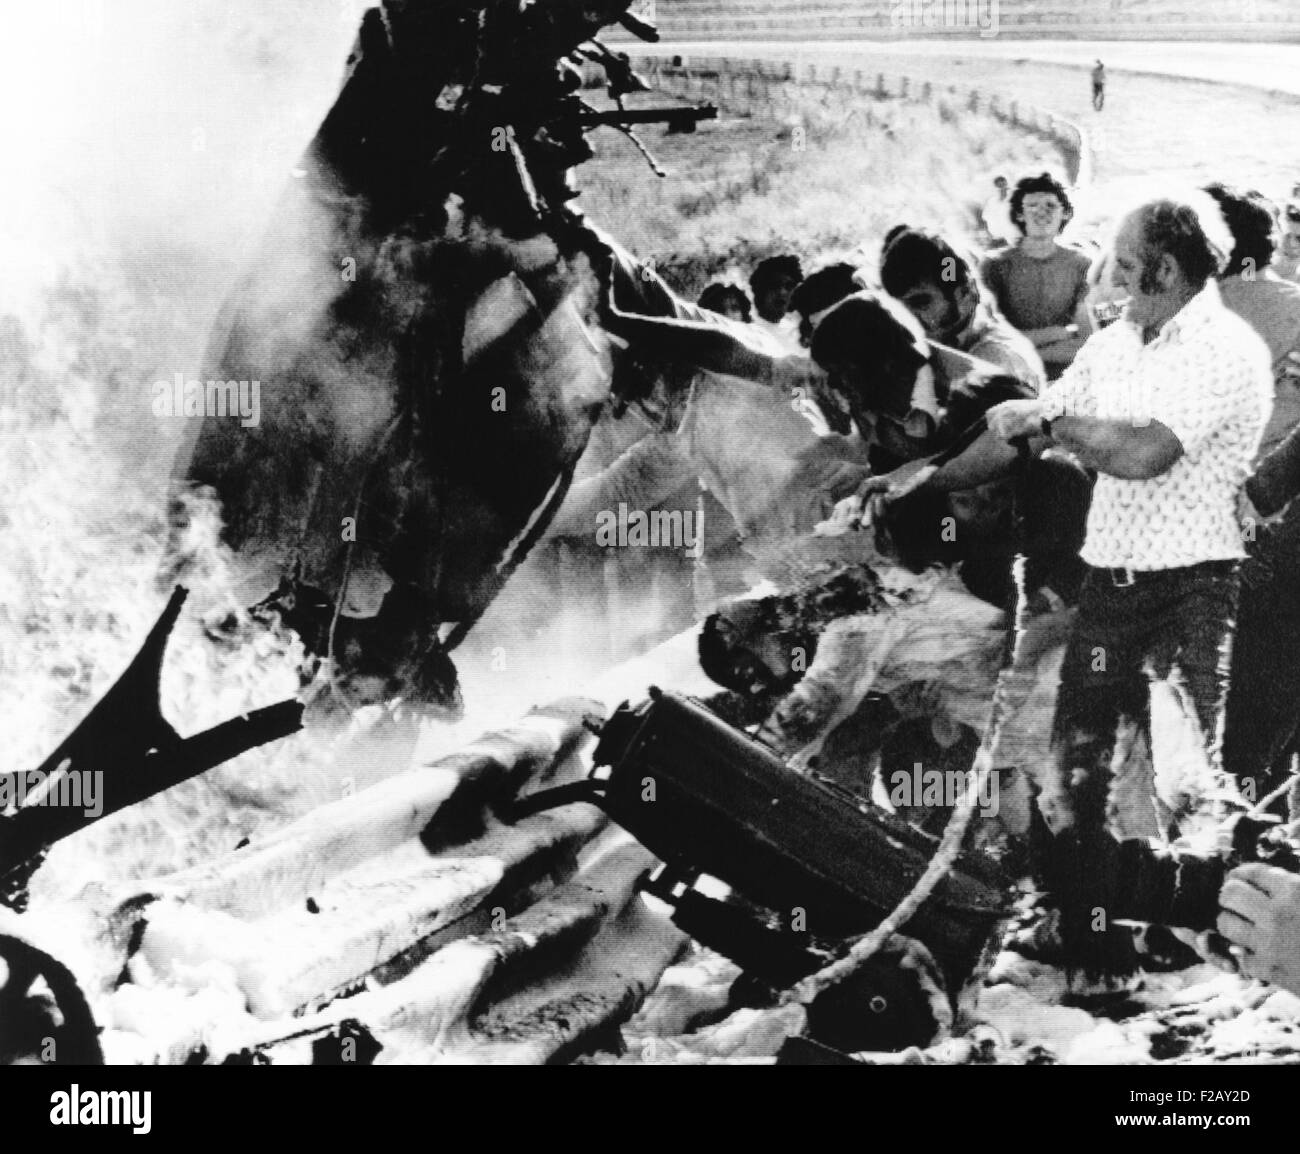 Retter versammeln sich um Peter Revsons zerstörten Rennwagen auf einer Rennstrecke in Johannesburg. 22. März 1974. Revson, 35, starb auf dem Weg ins Krankenhaus. (CSU 2015 9 914) Stockfoto